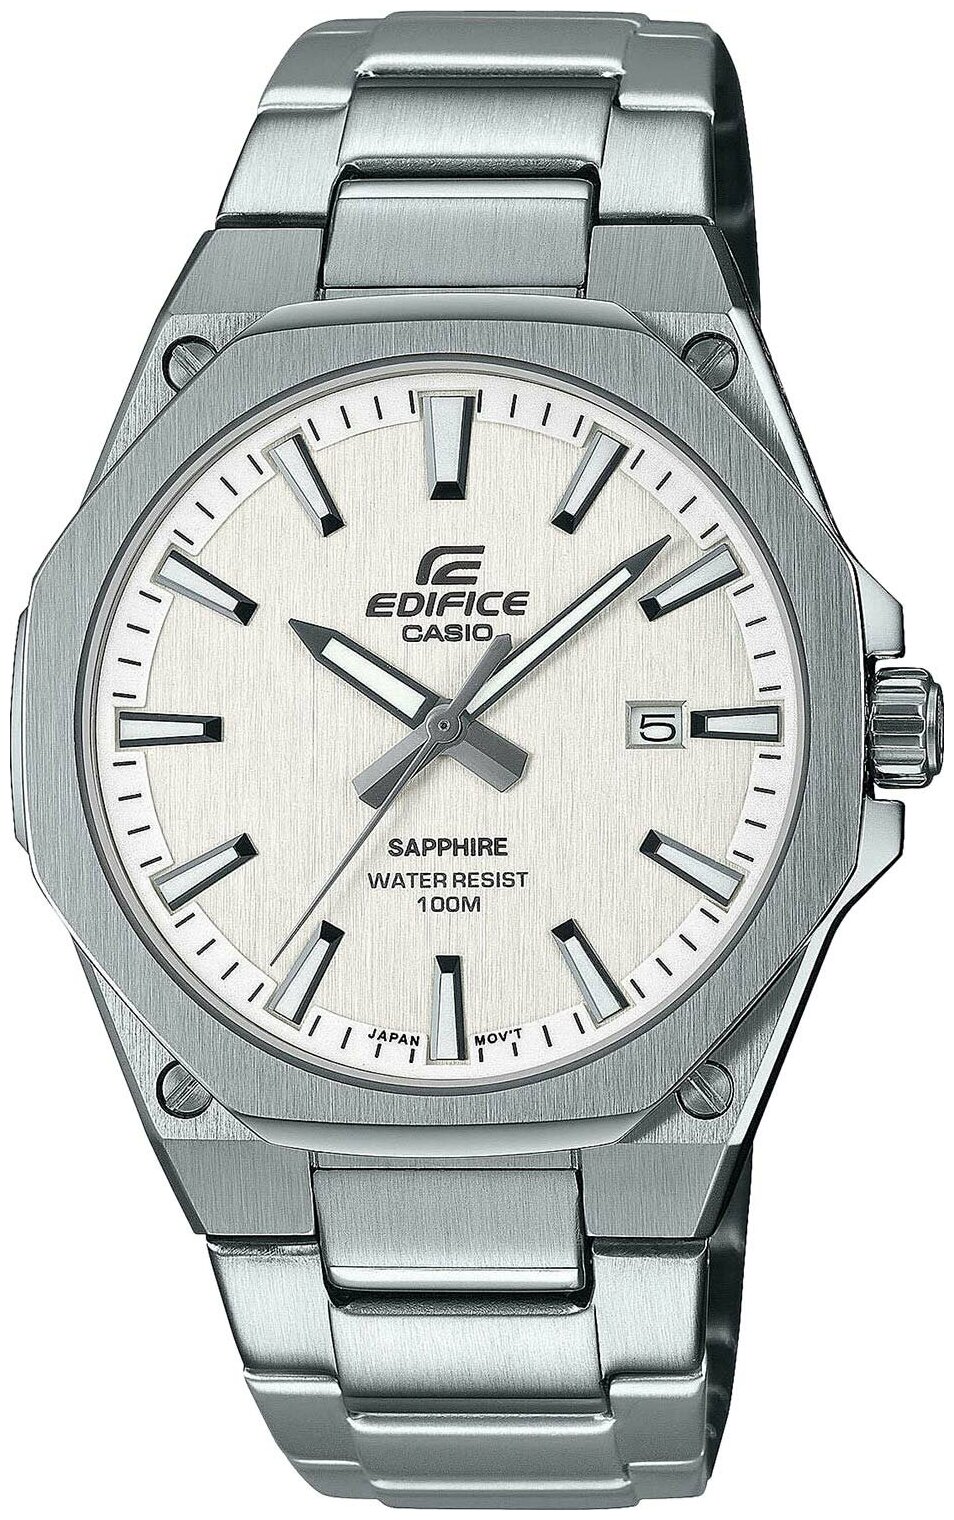 Наручные часы CASIO Edifice EFR-S108D-7A